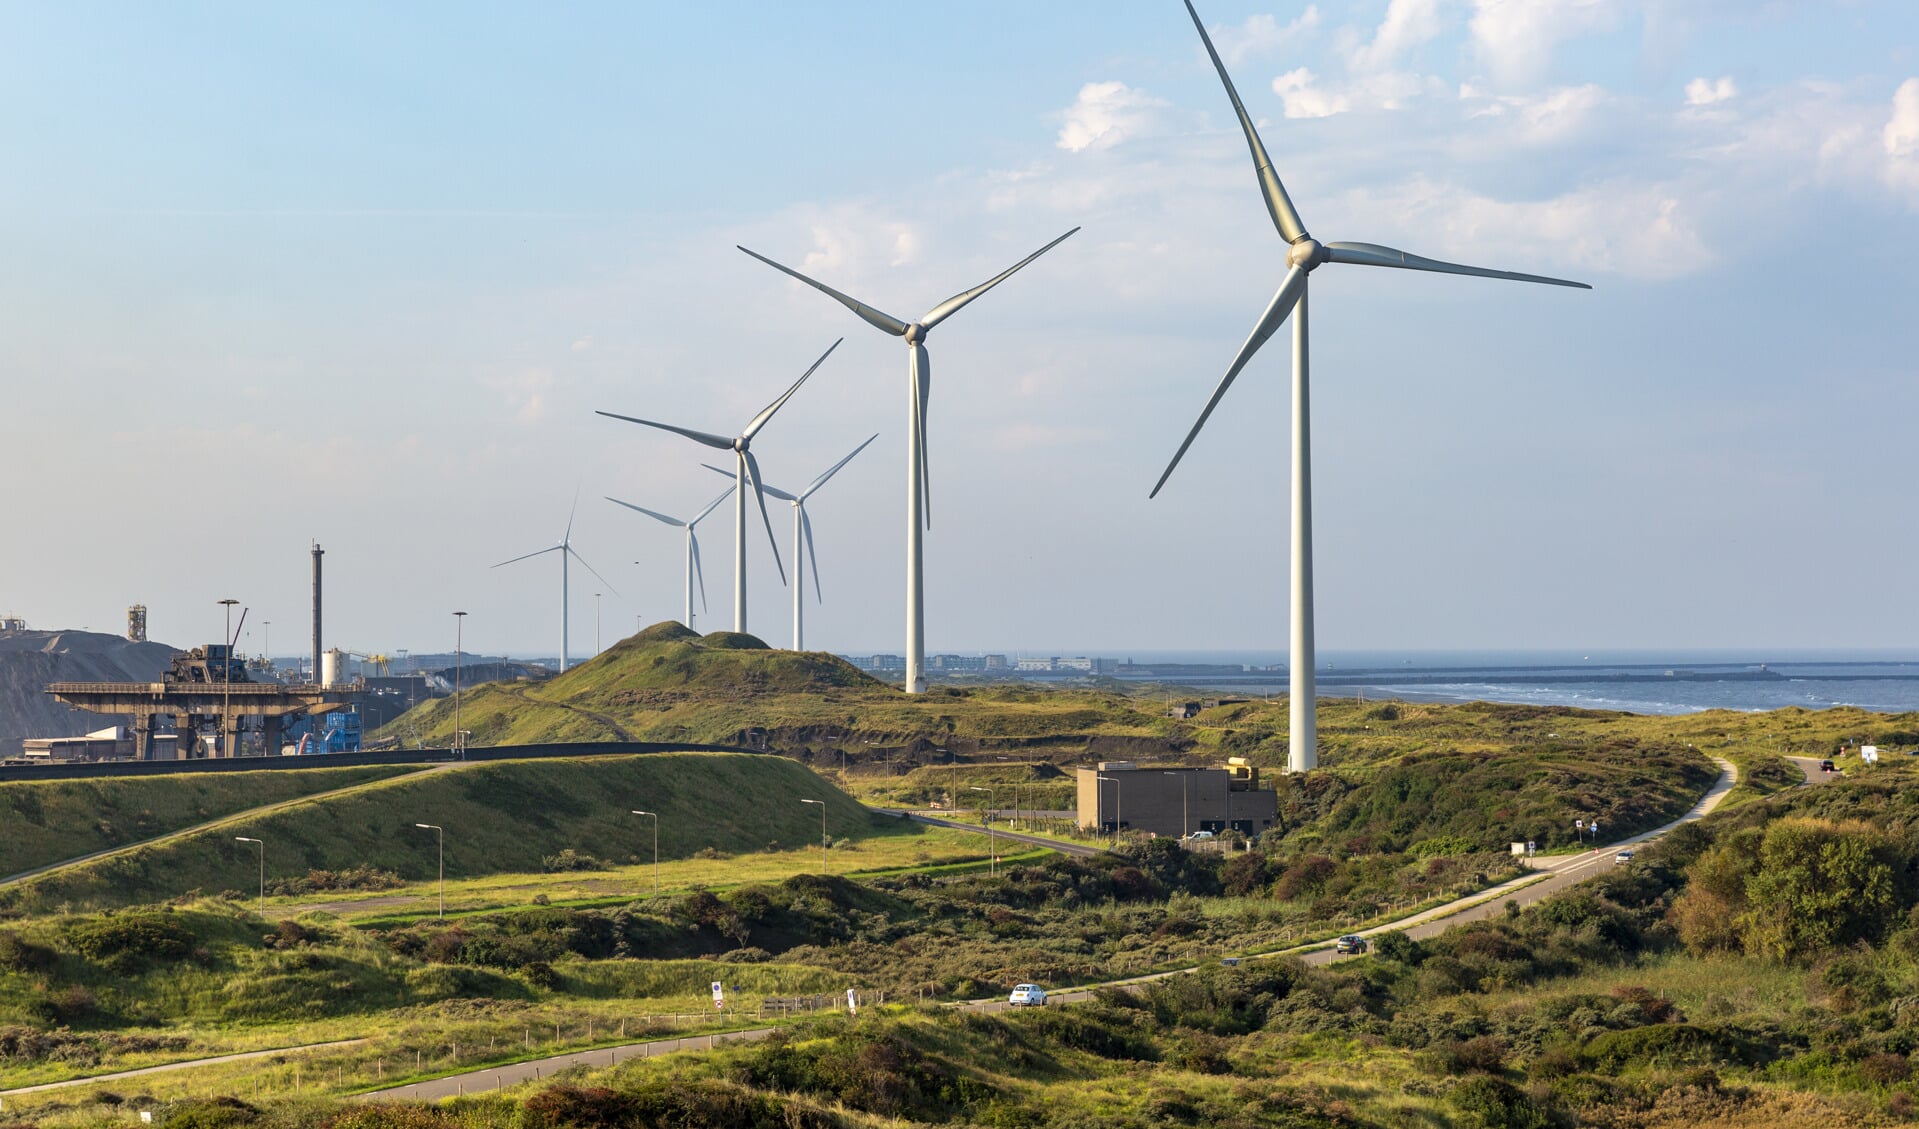 Het windpark is in eigendom van energiecoöperatie Windcollectief Noord-Holland en duurzame energieontwikkelaar Infinergy.